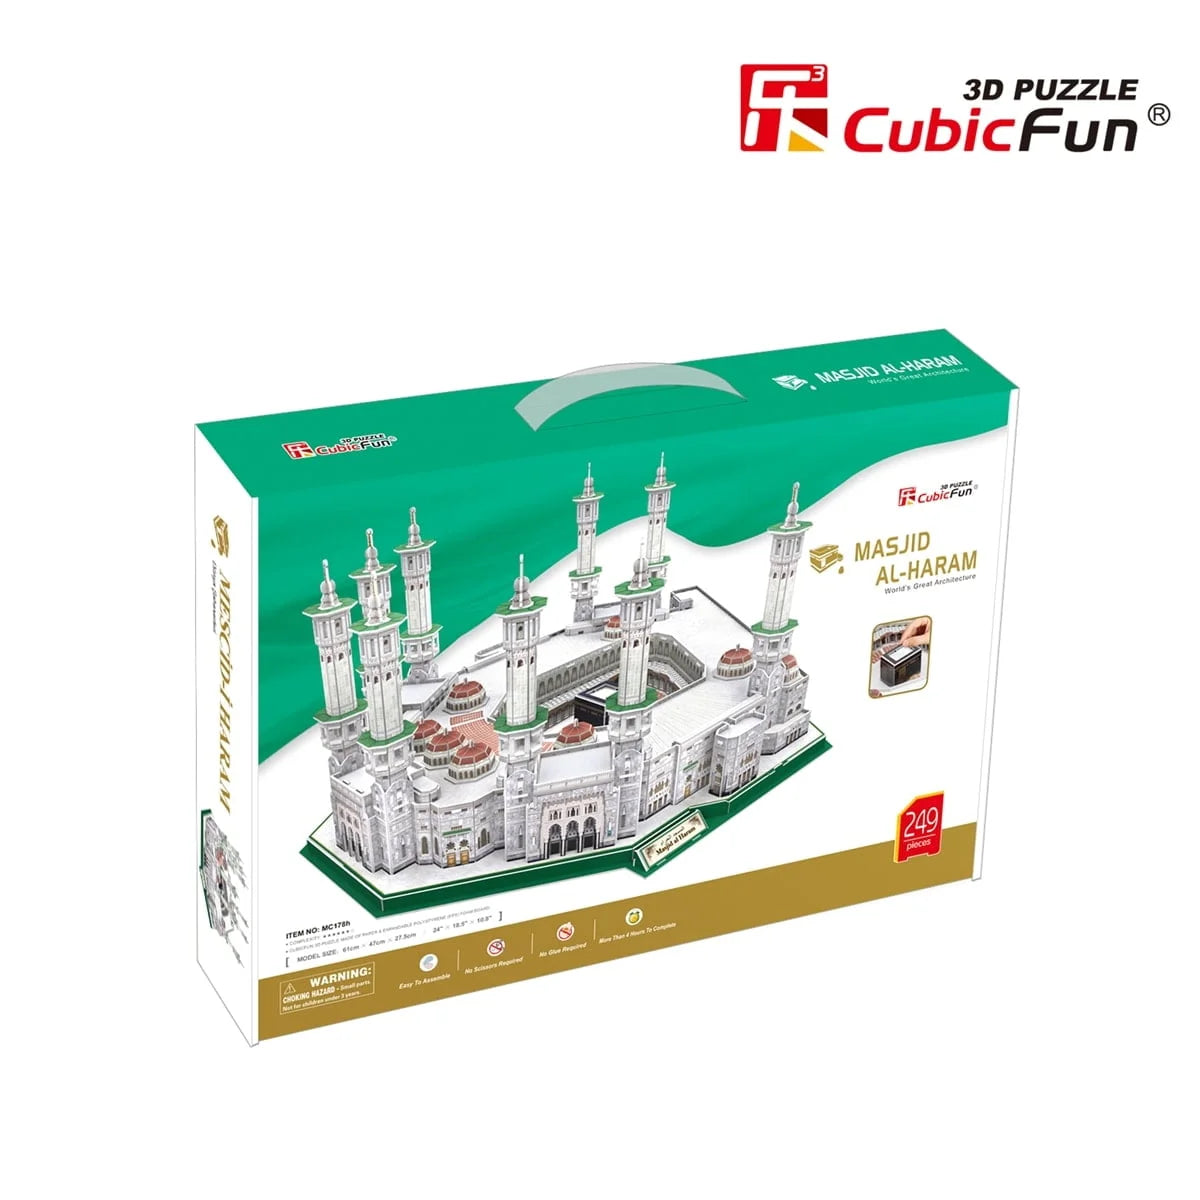 Cubic Fun Masjid Al Haram 3D Puzzle 249 Pieces